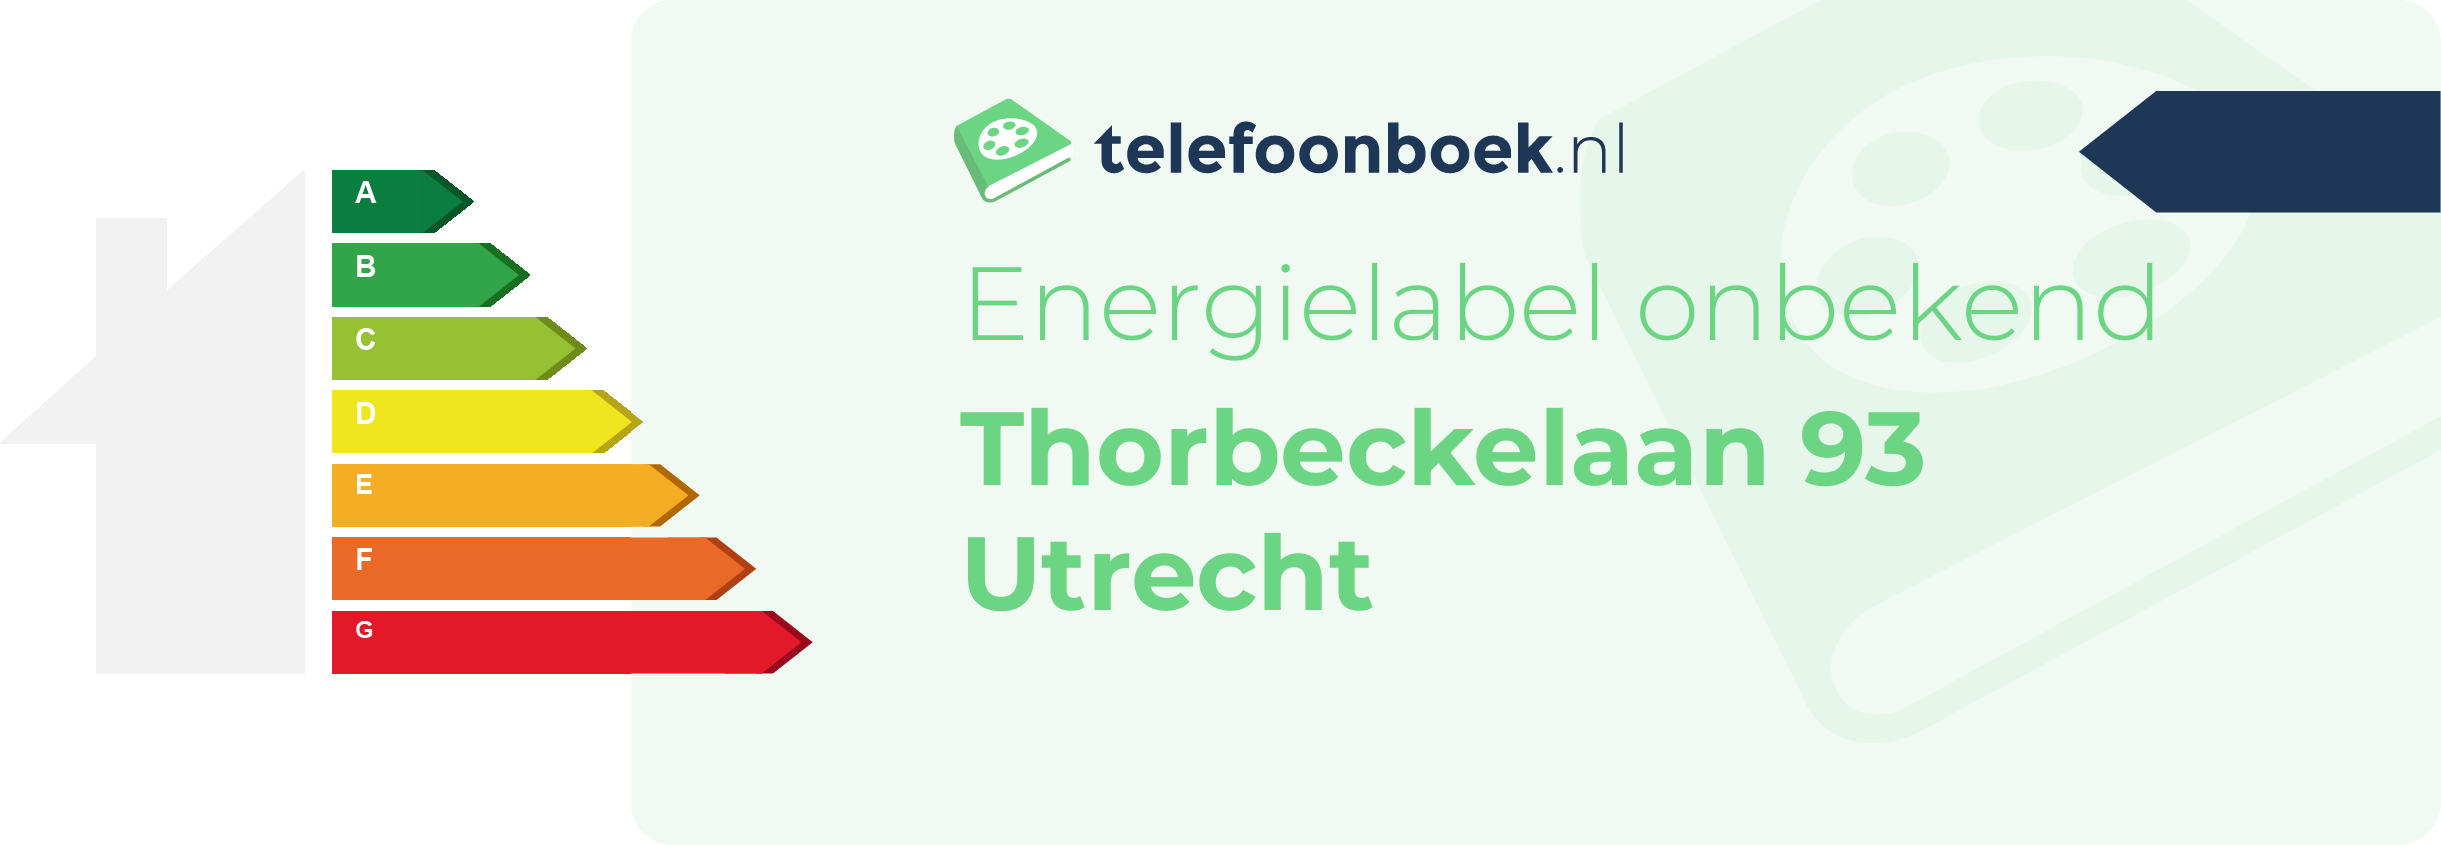 Energielabel Thorbeckelaan 93 Utrecht